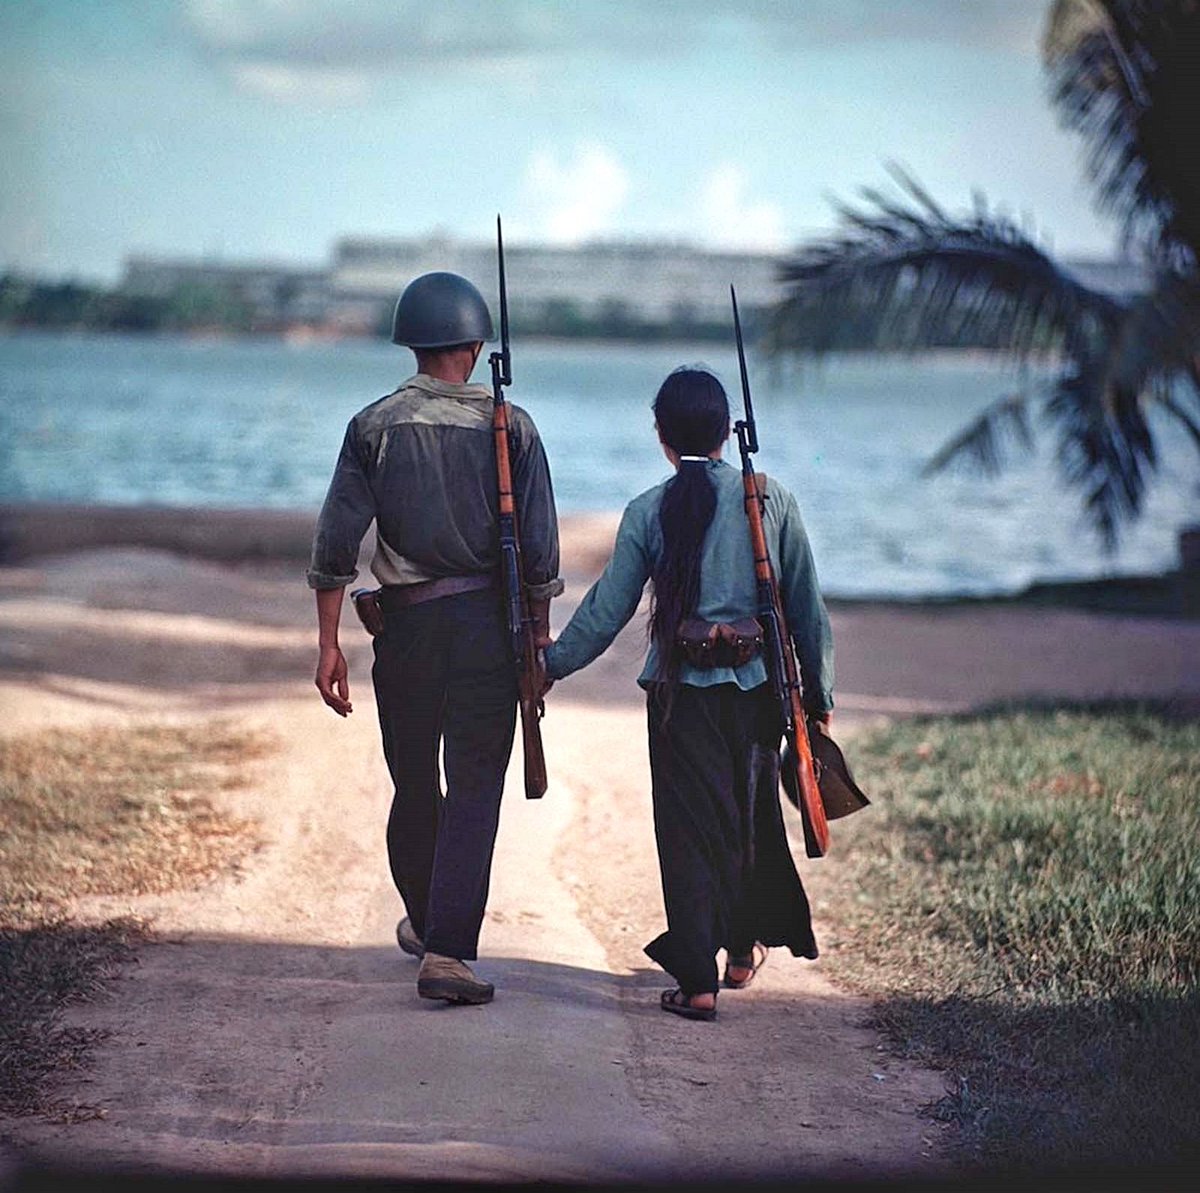 - ¿Quién estará en las trincheras a tu lado?
- ¿Y eso importa?
- Más que la guerra misma'
• 𝙴𝚛𝚗𝚎𝚜𝚝 𝙷𝚎𝚖𝚒𝚗𝚐𝚠𝚊𝚢 •
Foto: Una pareja de guerreros
tomados de la mano, Vietnam, 1971
📷 @RareHPhotos 
#NuestraLuchaEsPorLaVida